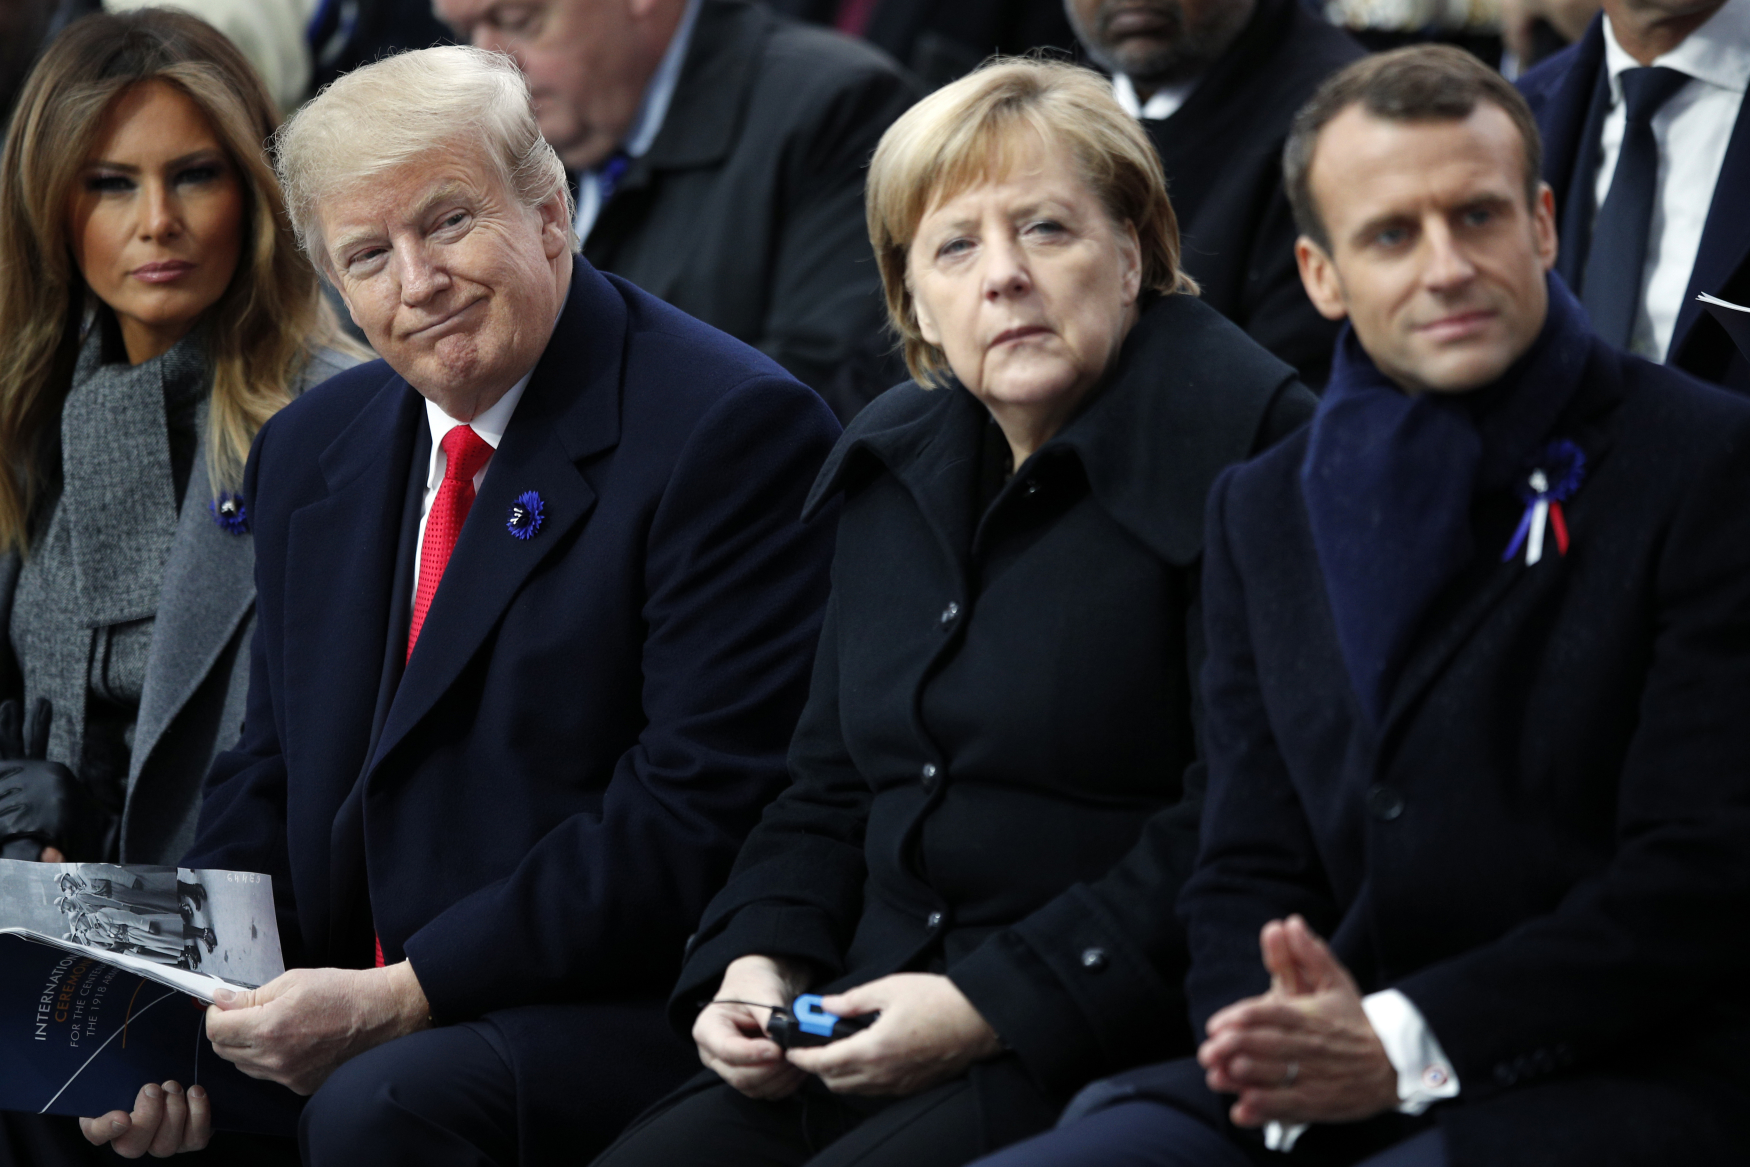 Oslav stého výročí konce první světové války se v Paříži zúčastnili Donald Trump, Angela Merkelová a Emmanuel Macron